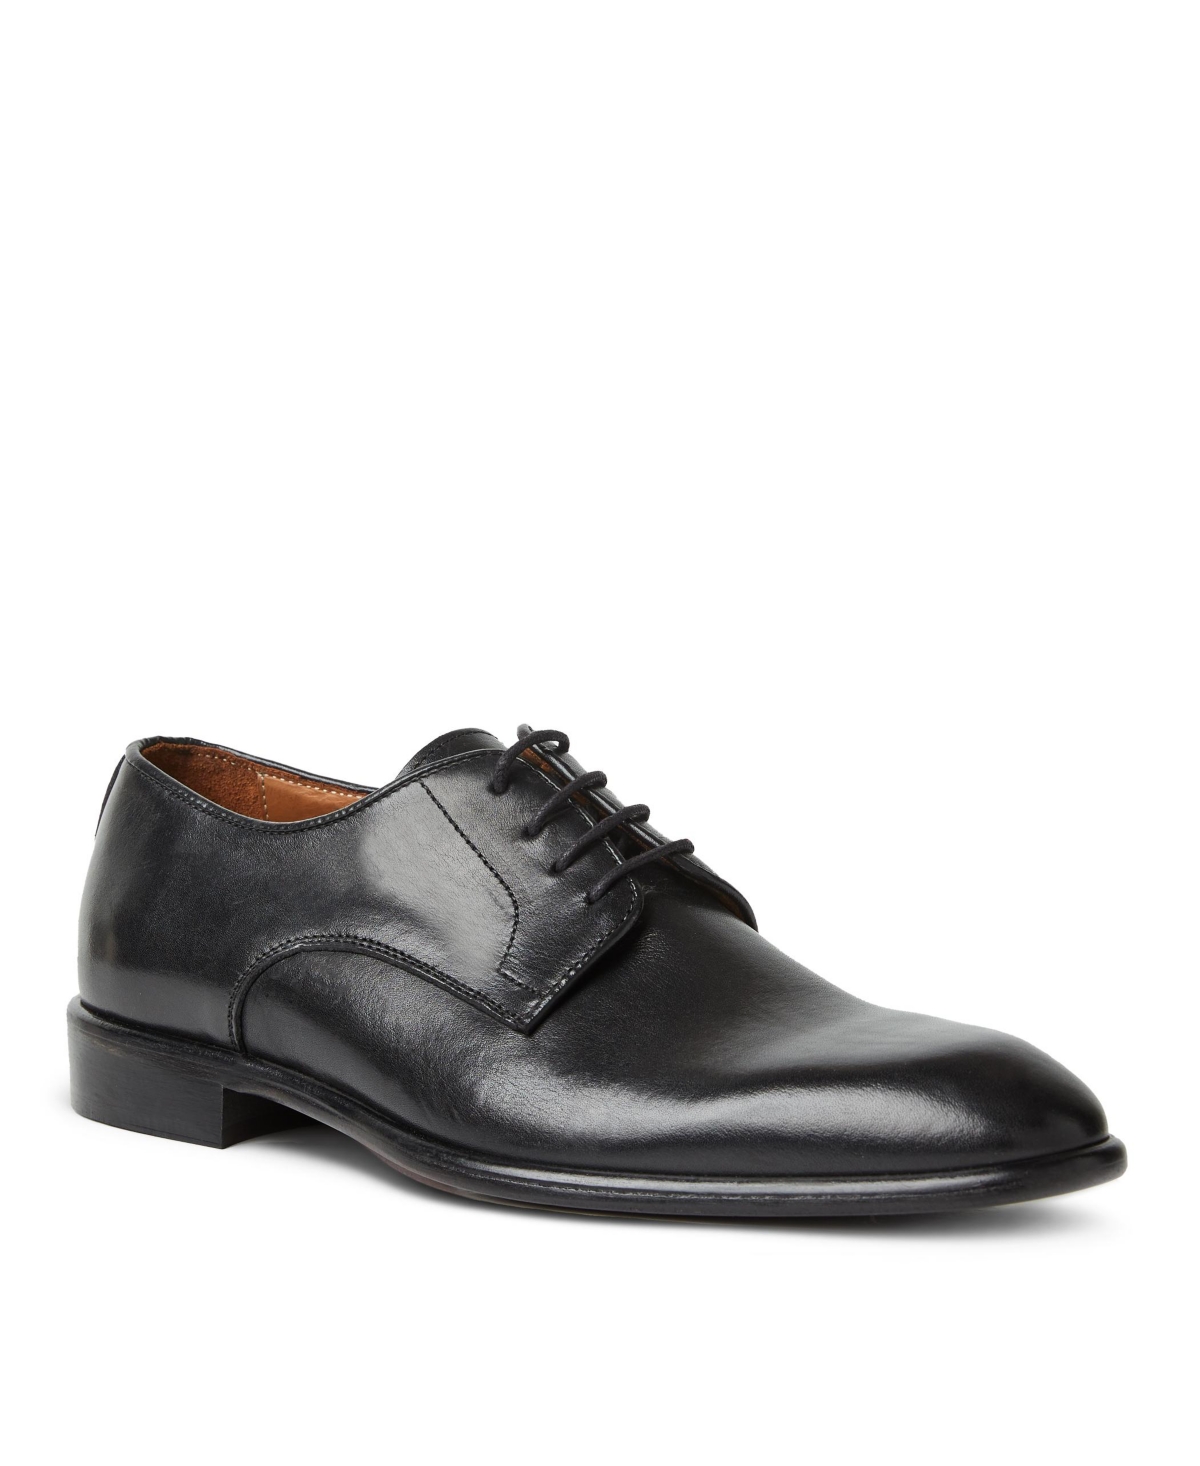 Men's Salerno Leather Oxford Dress Shoes - Black